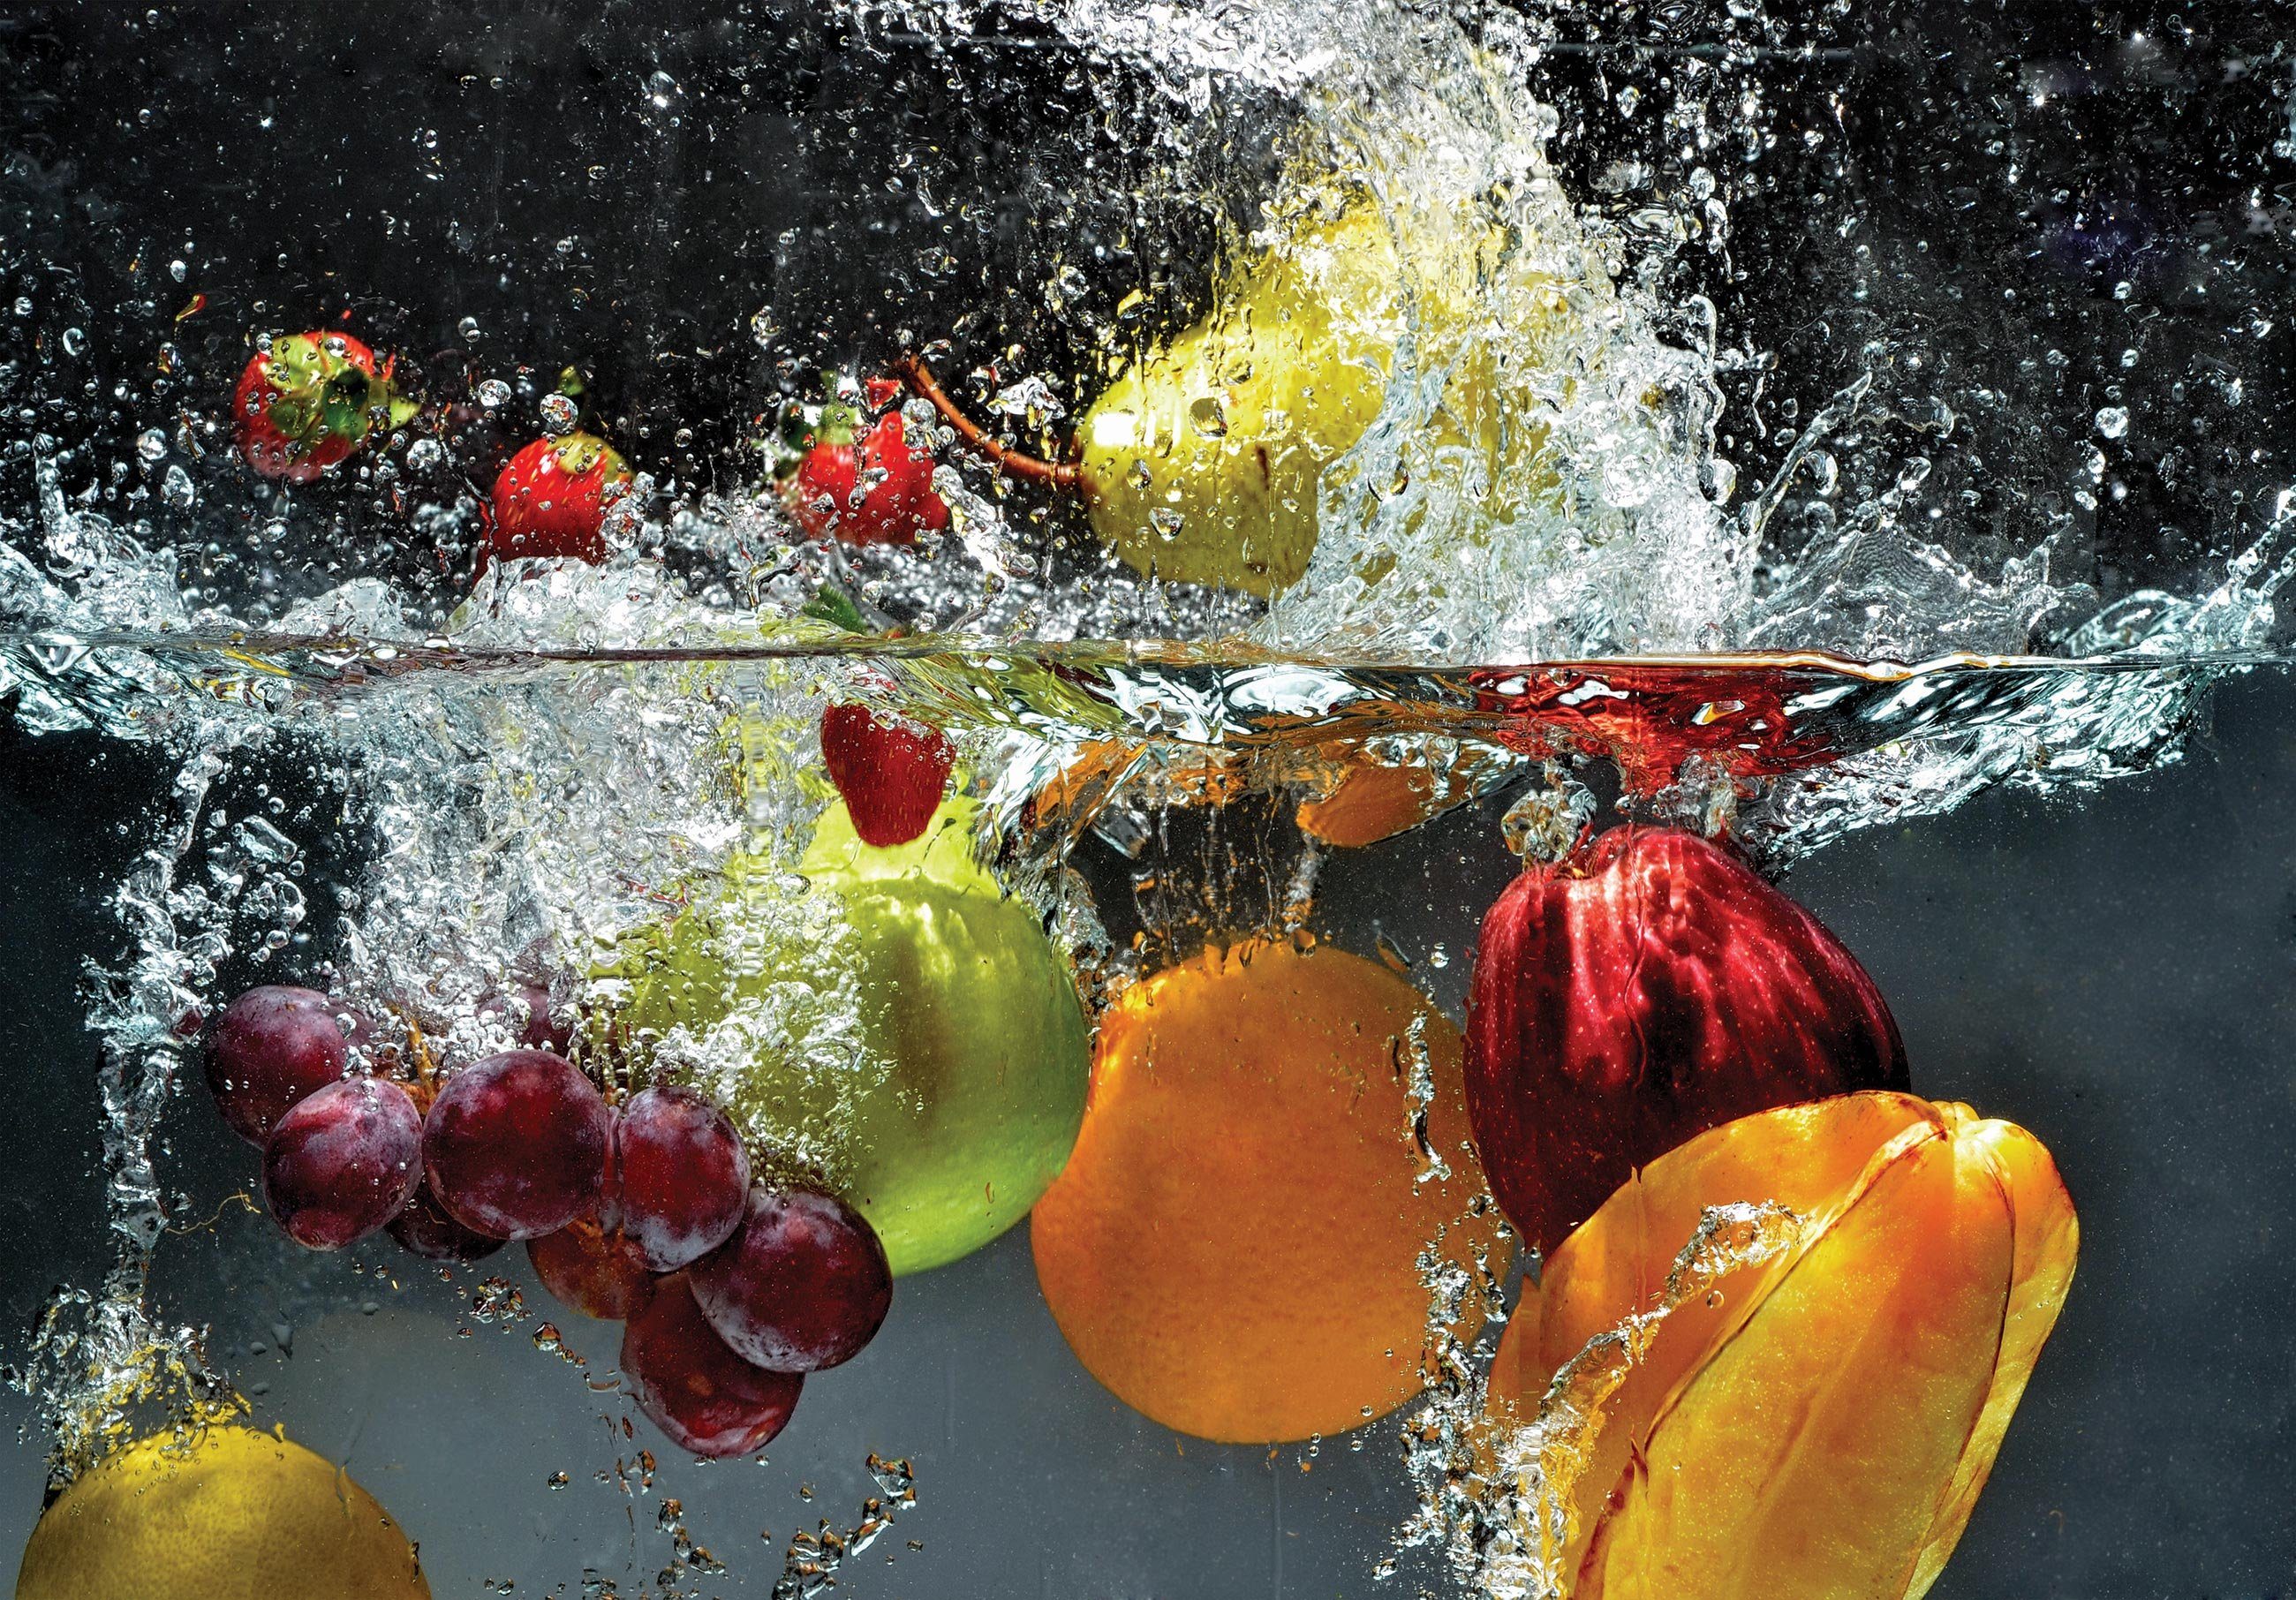 Wallarena Fototapete Obst Weintrauben Wasser Vlies Tapete Glatt, Vliestapete Orangen inklusive Natur, Wandtapete Küche, Kleister